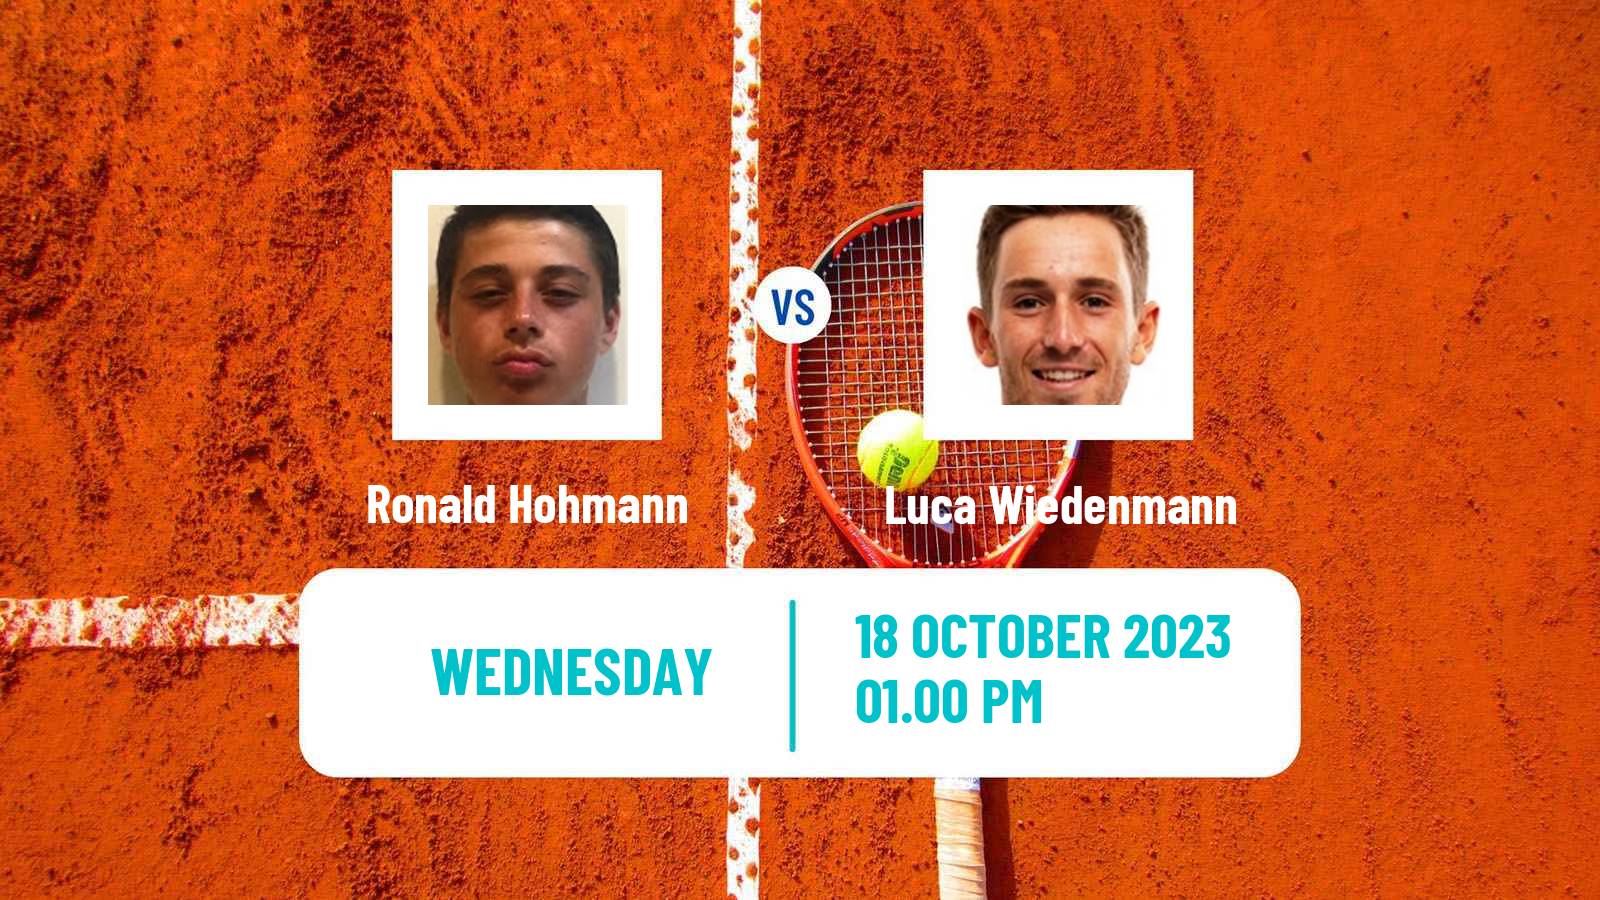 Tennis ITF M15 Las Vegas Nv Men Ronald Hohmann - Luca Wiedenmann